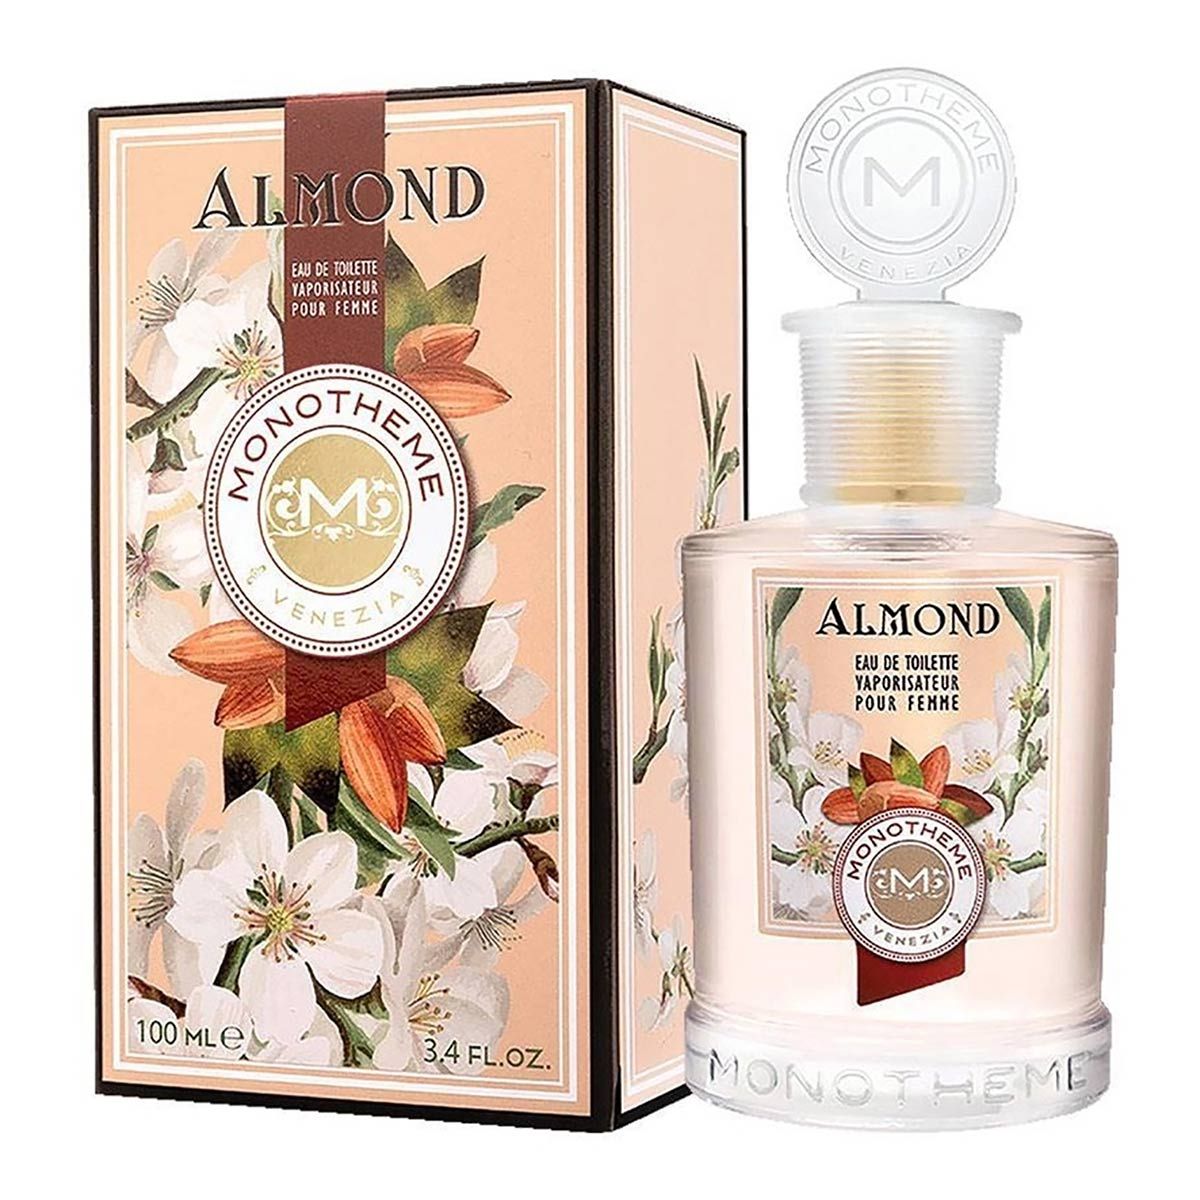  Monotheme Almond 